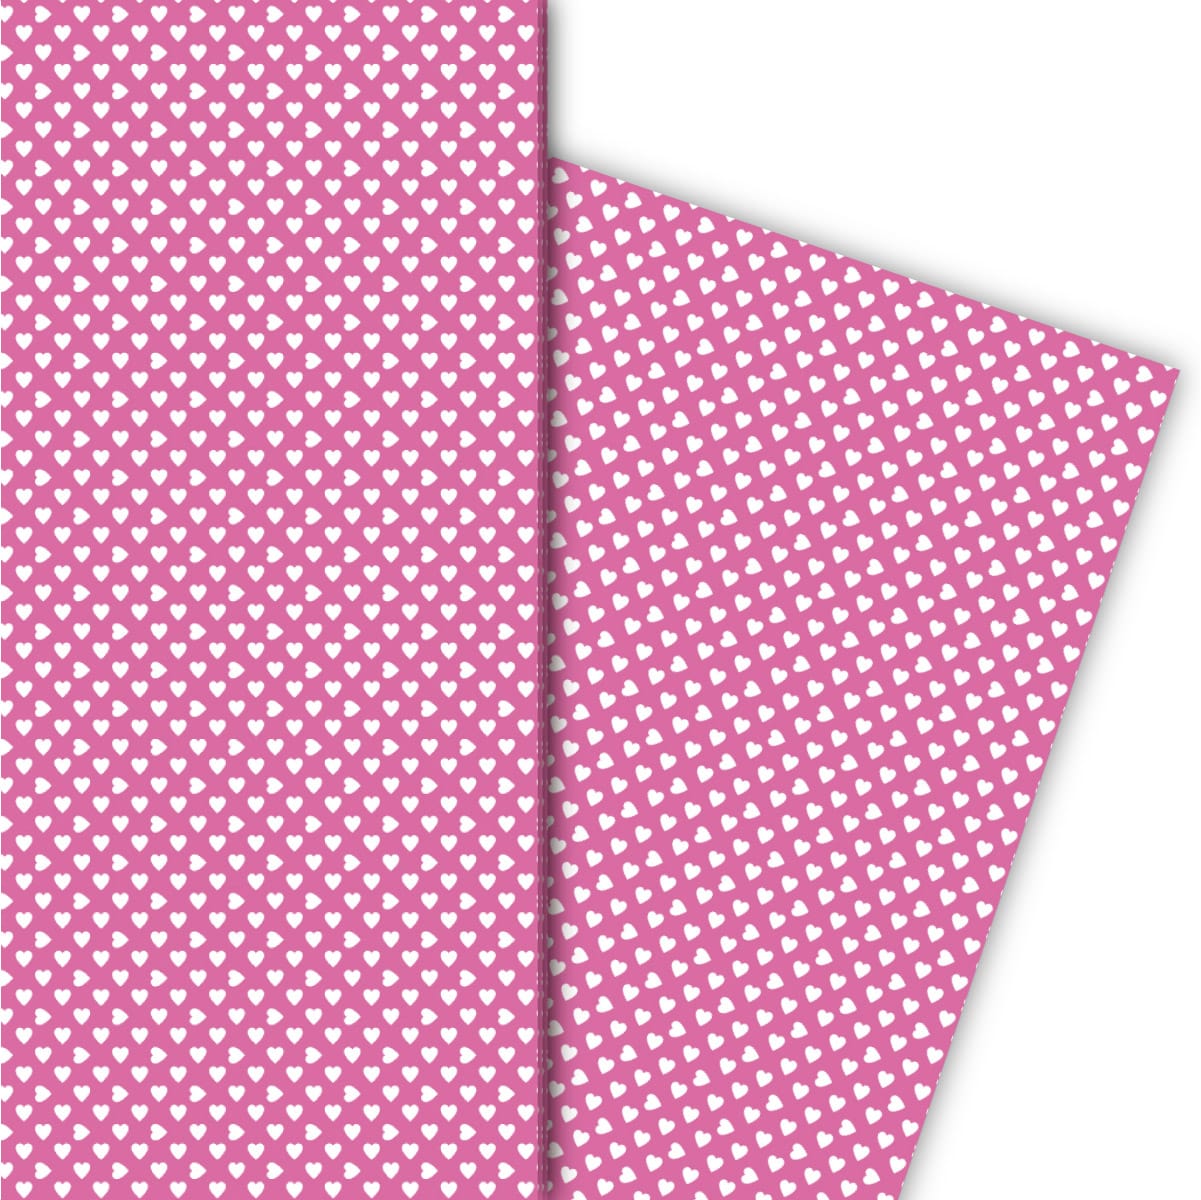 Kartenkaufrausch: Romantisches Geschenkpapier mit kleinen aus unserer Liebes Papeterie in rosa